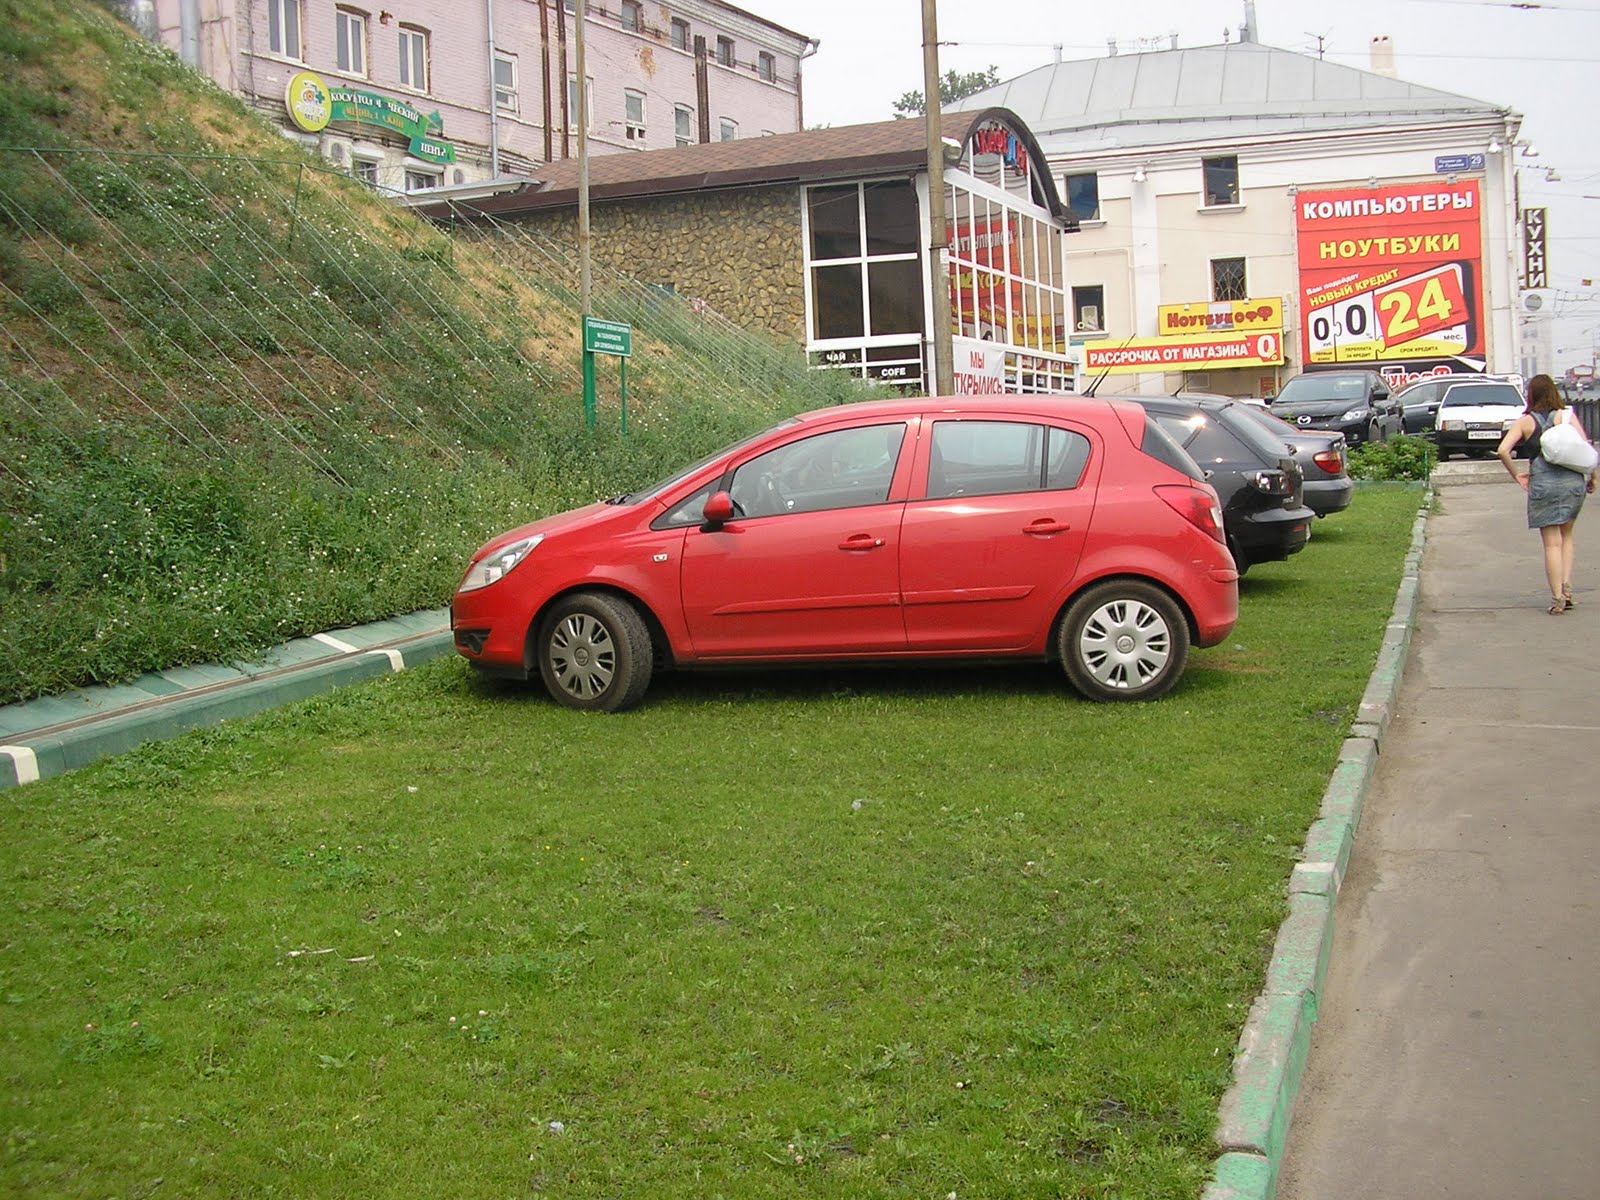 Парковка на зеленой зоне. Парковка на газоне. Газон авто. Машина припаркована на газоне. Тротуар парковка машины.